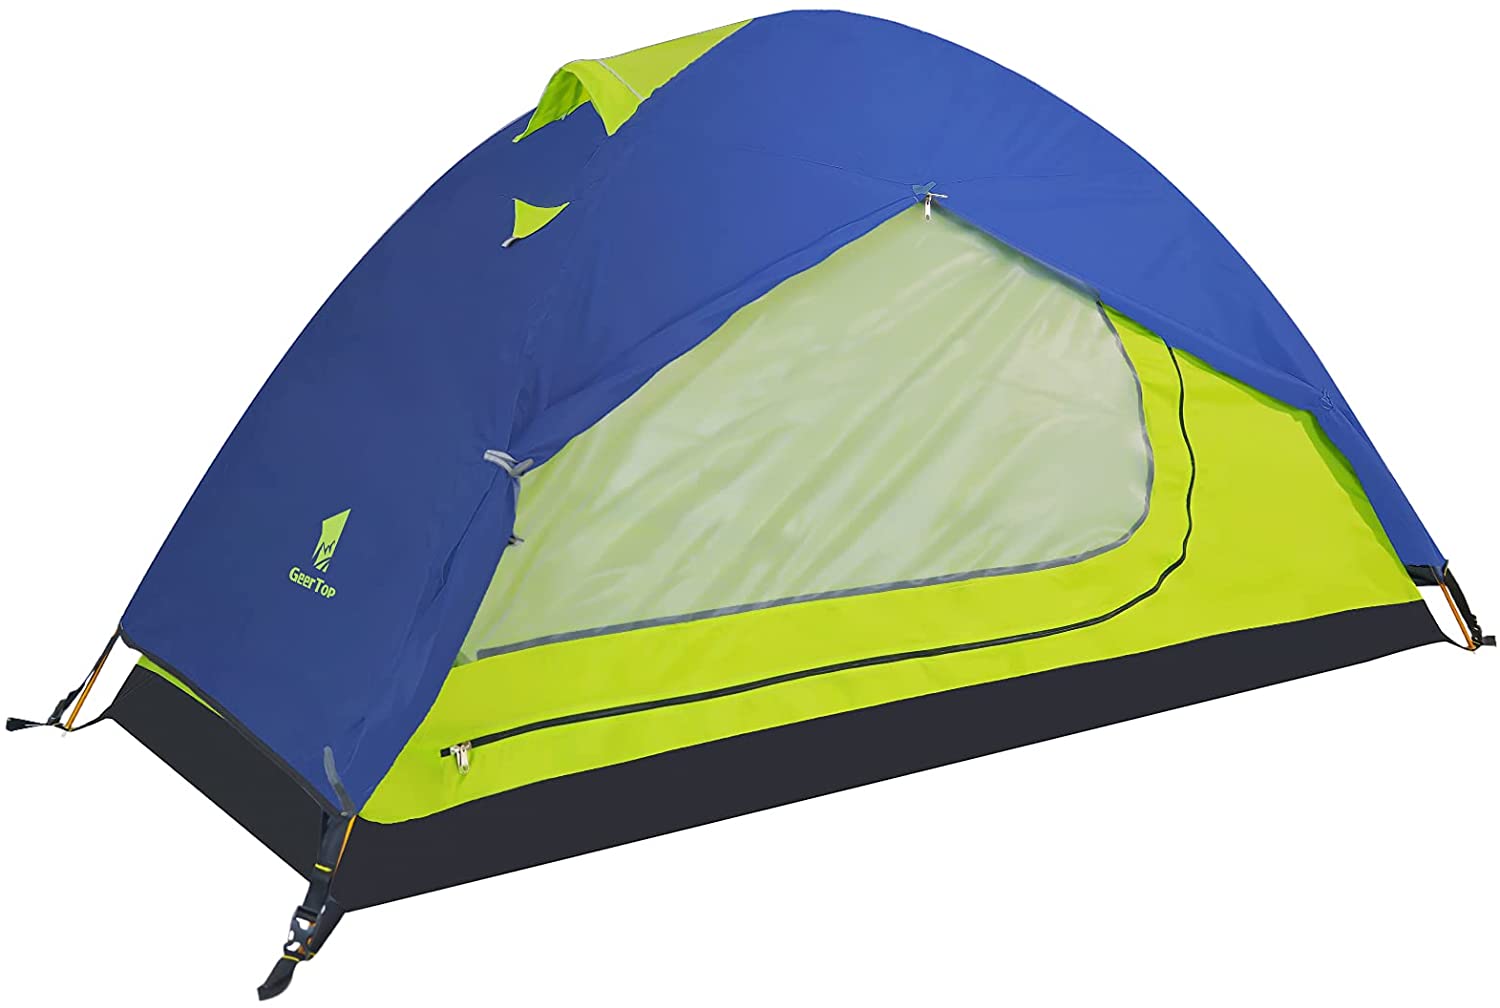 GeerTop Topwind 1 | 1 Person 3 Season Backpacking Tent